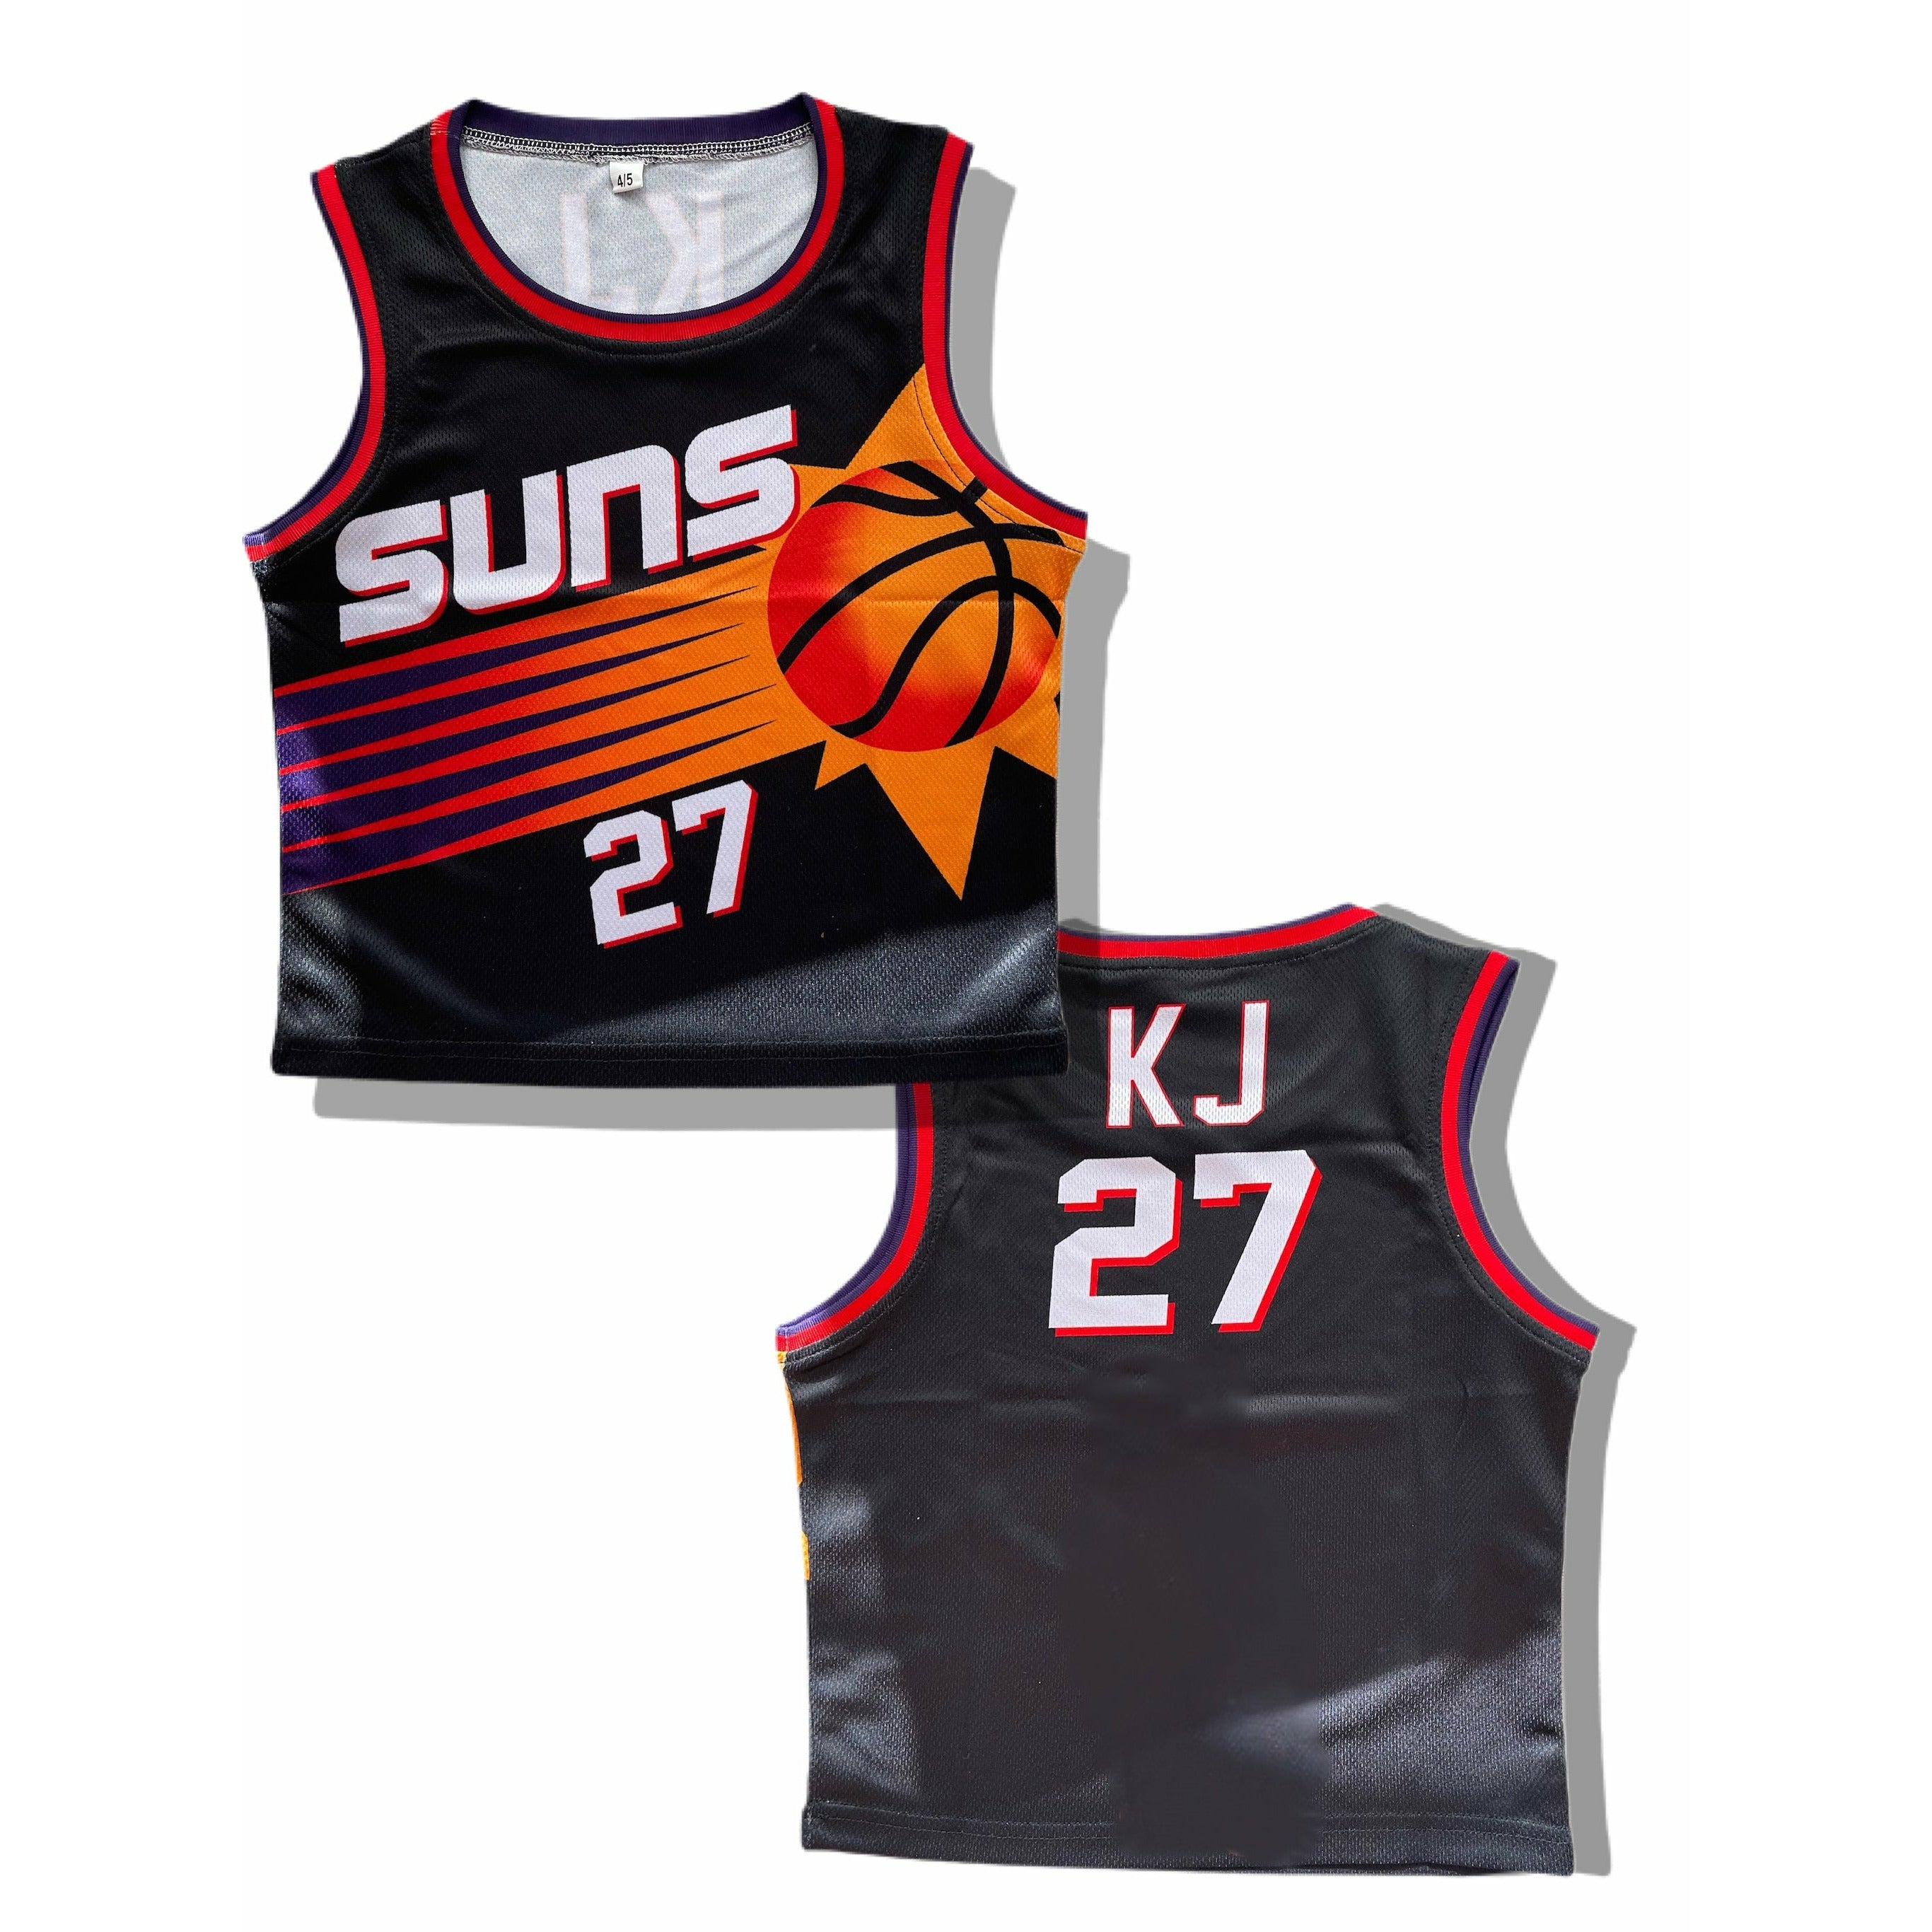 Suns Basketball Jersey